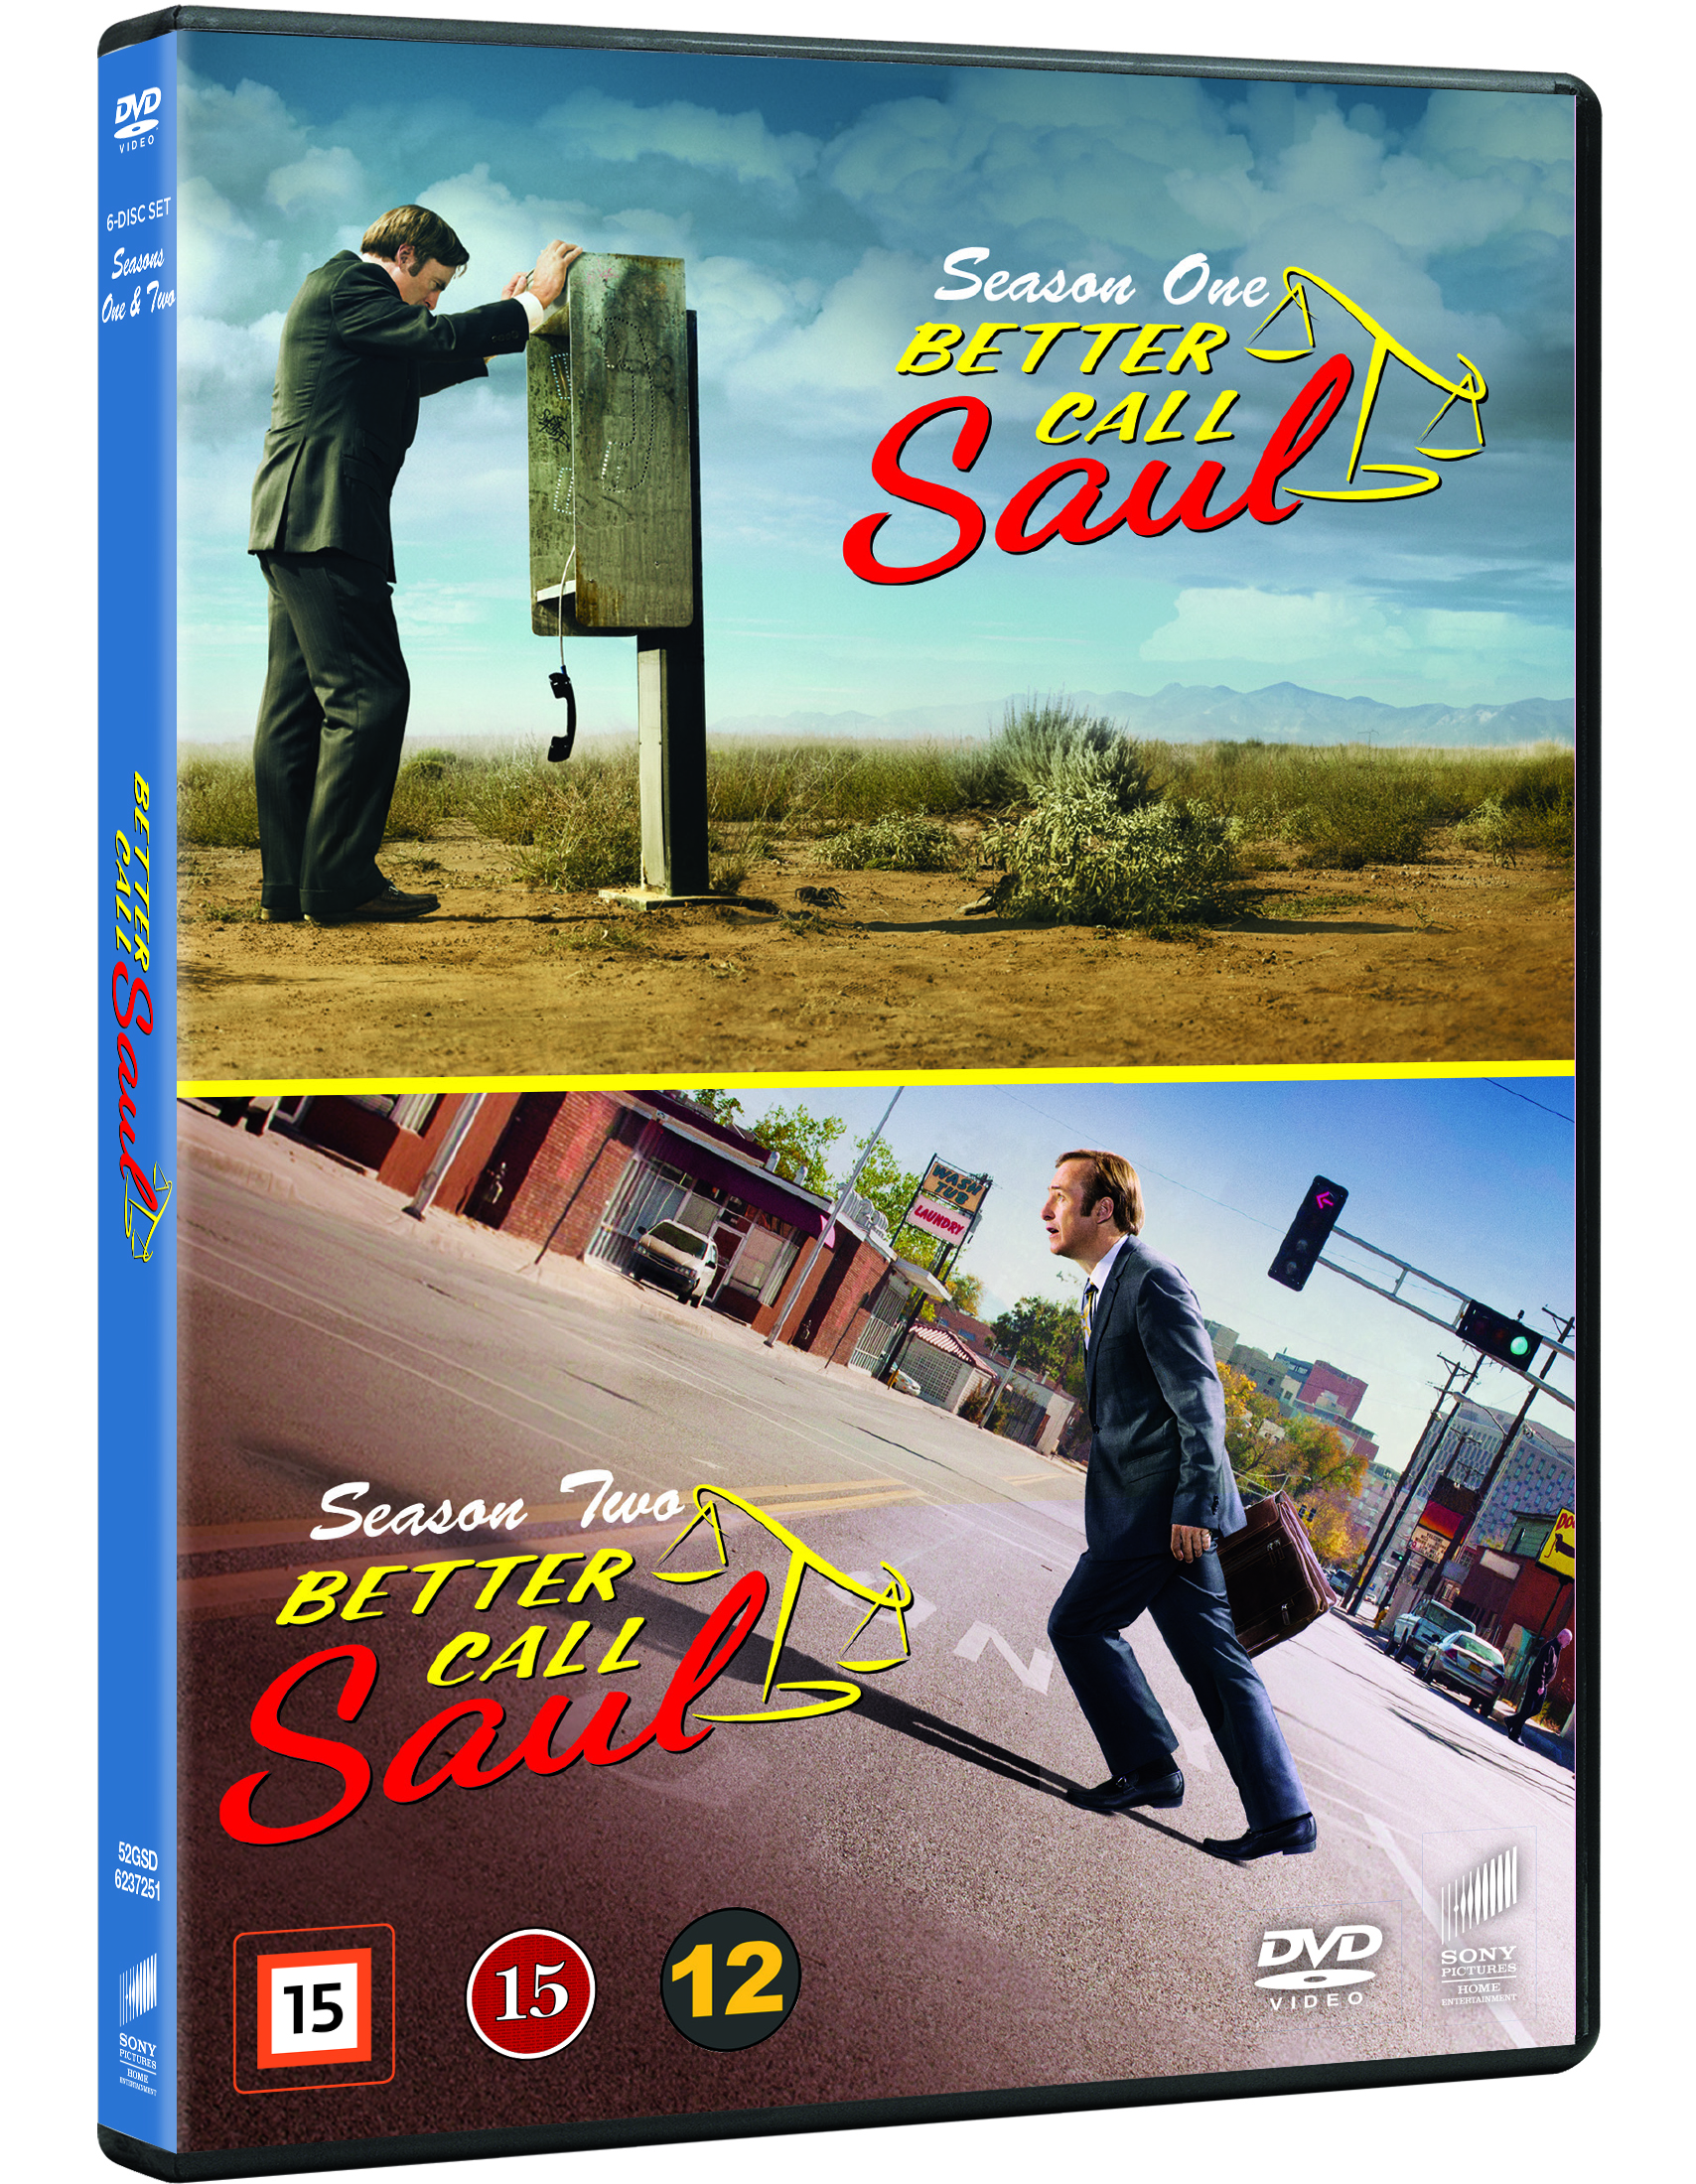 better call saul season 1 dvd release date